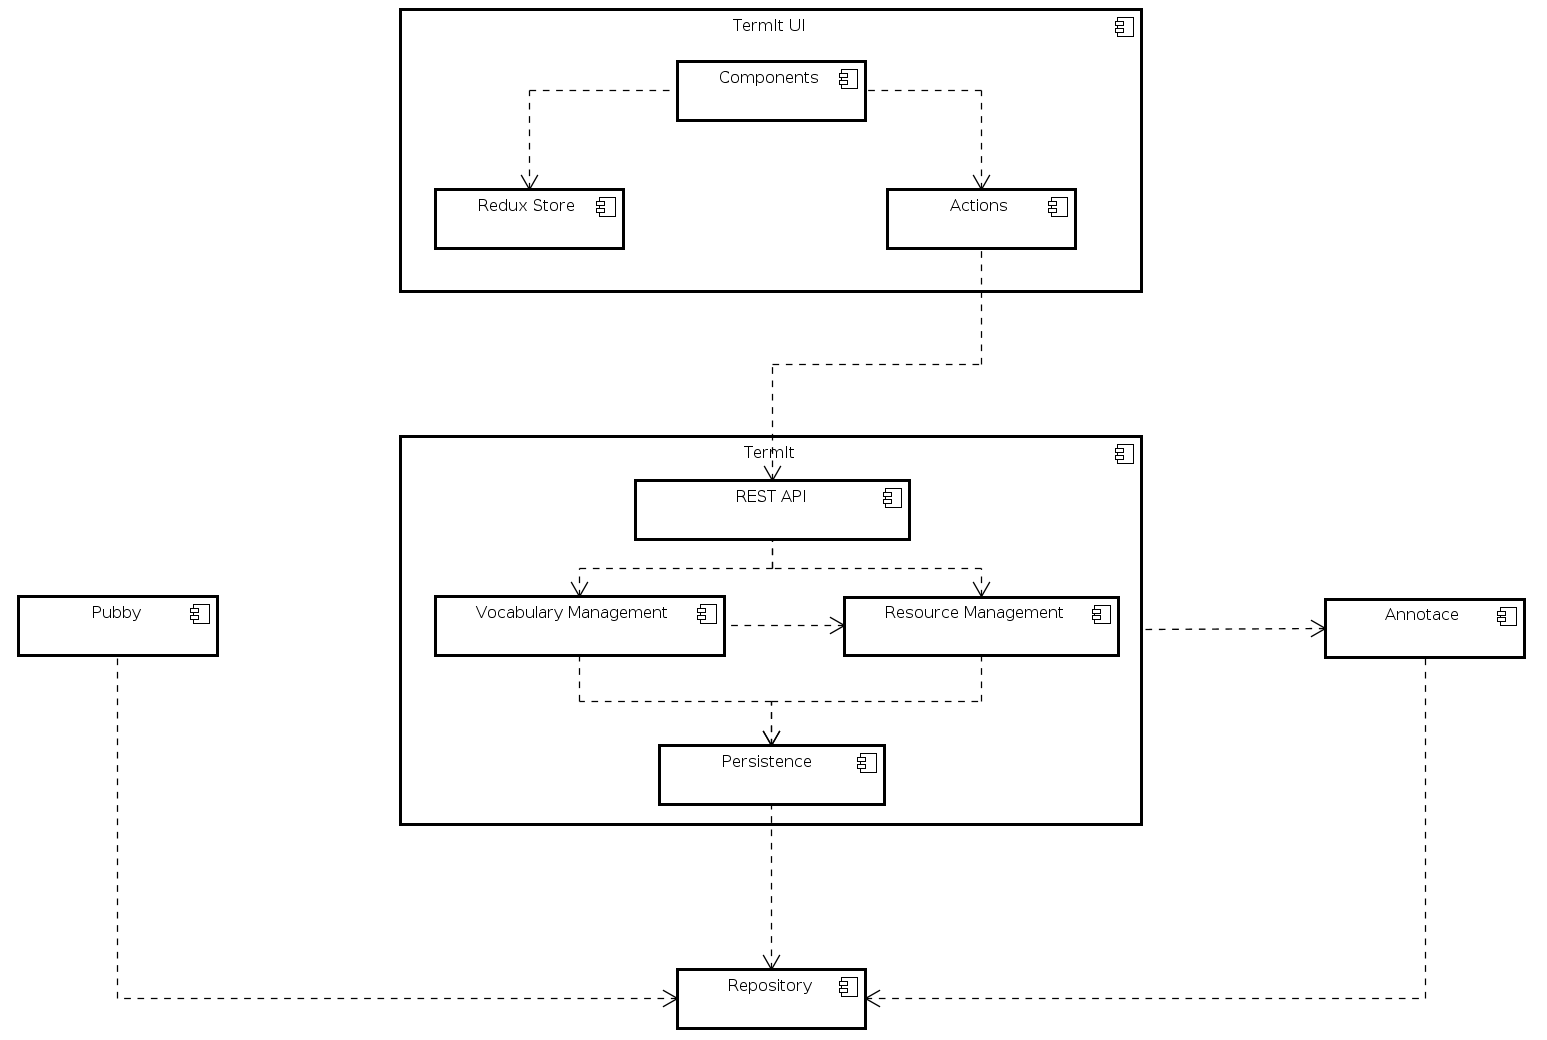 TermIt architecture diagram